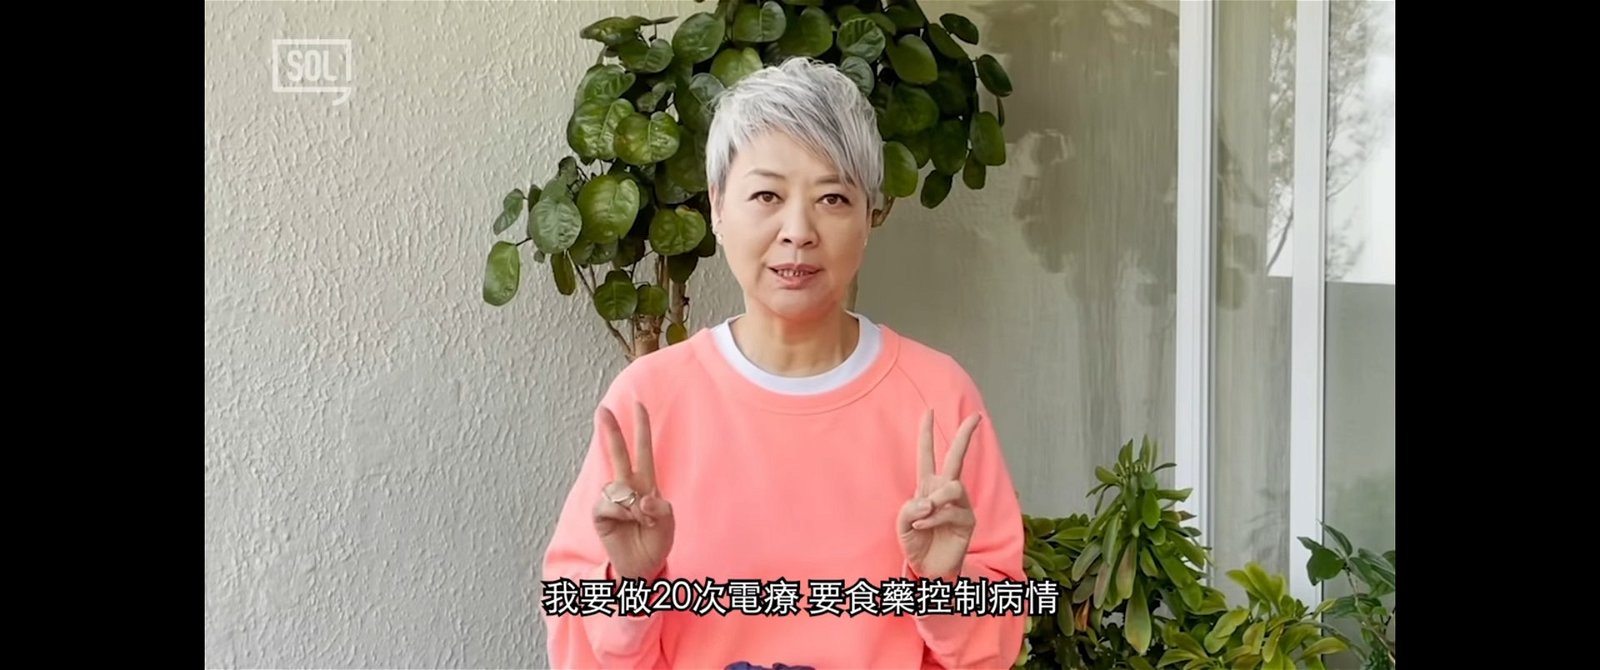 金燕玲在影片内给予癌症病友一些忠告。